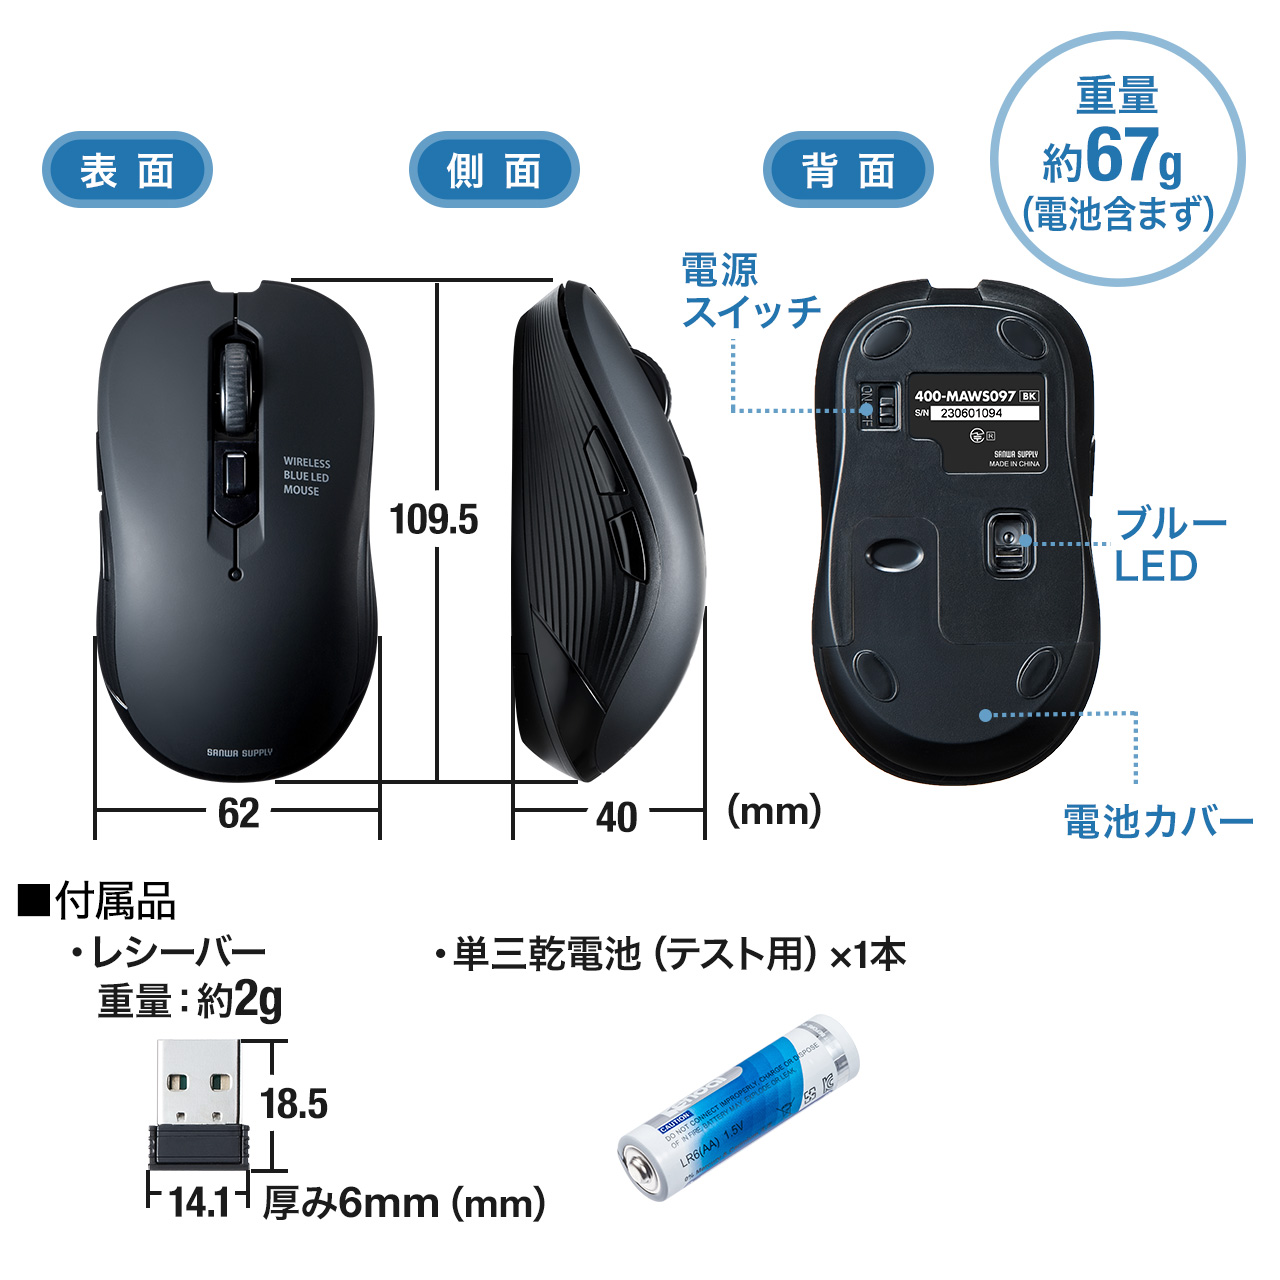 ワイヤレスマウス 静音 5ボタン 2.4GHz 無線 マウス Type-A レシーバー DPI切替え ラバーコーティング 多ボタン コスパ レッド 400-MAWS097R